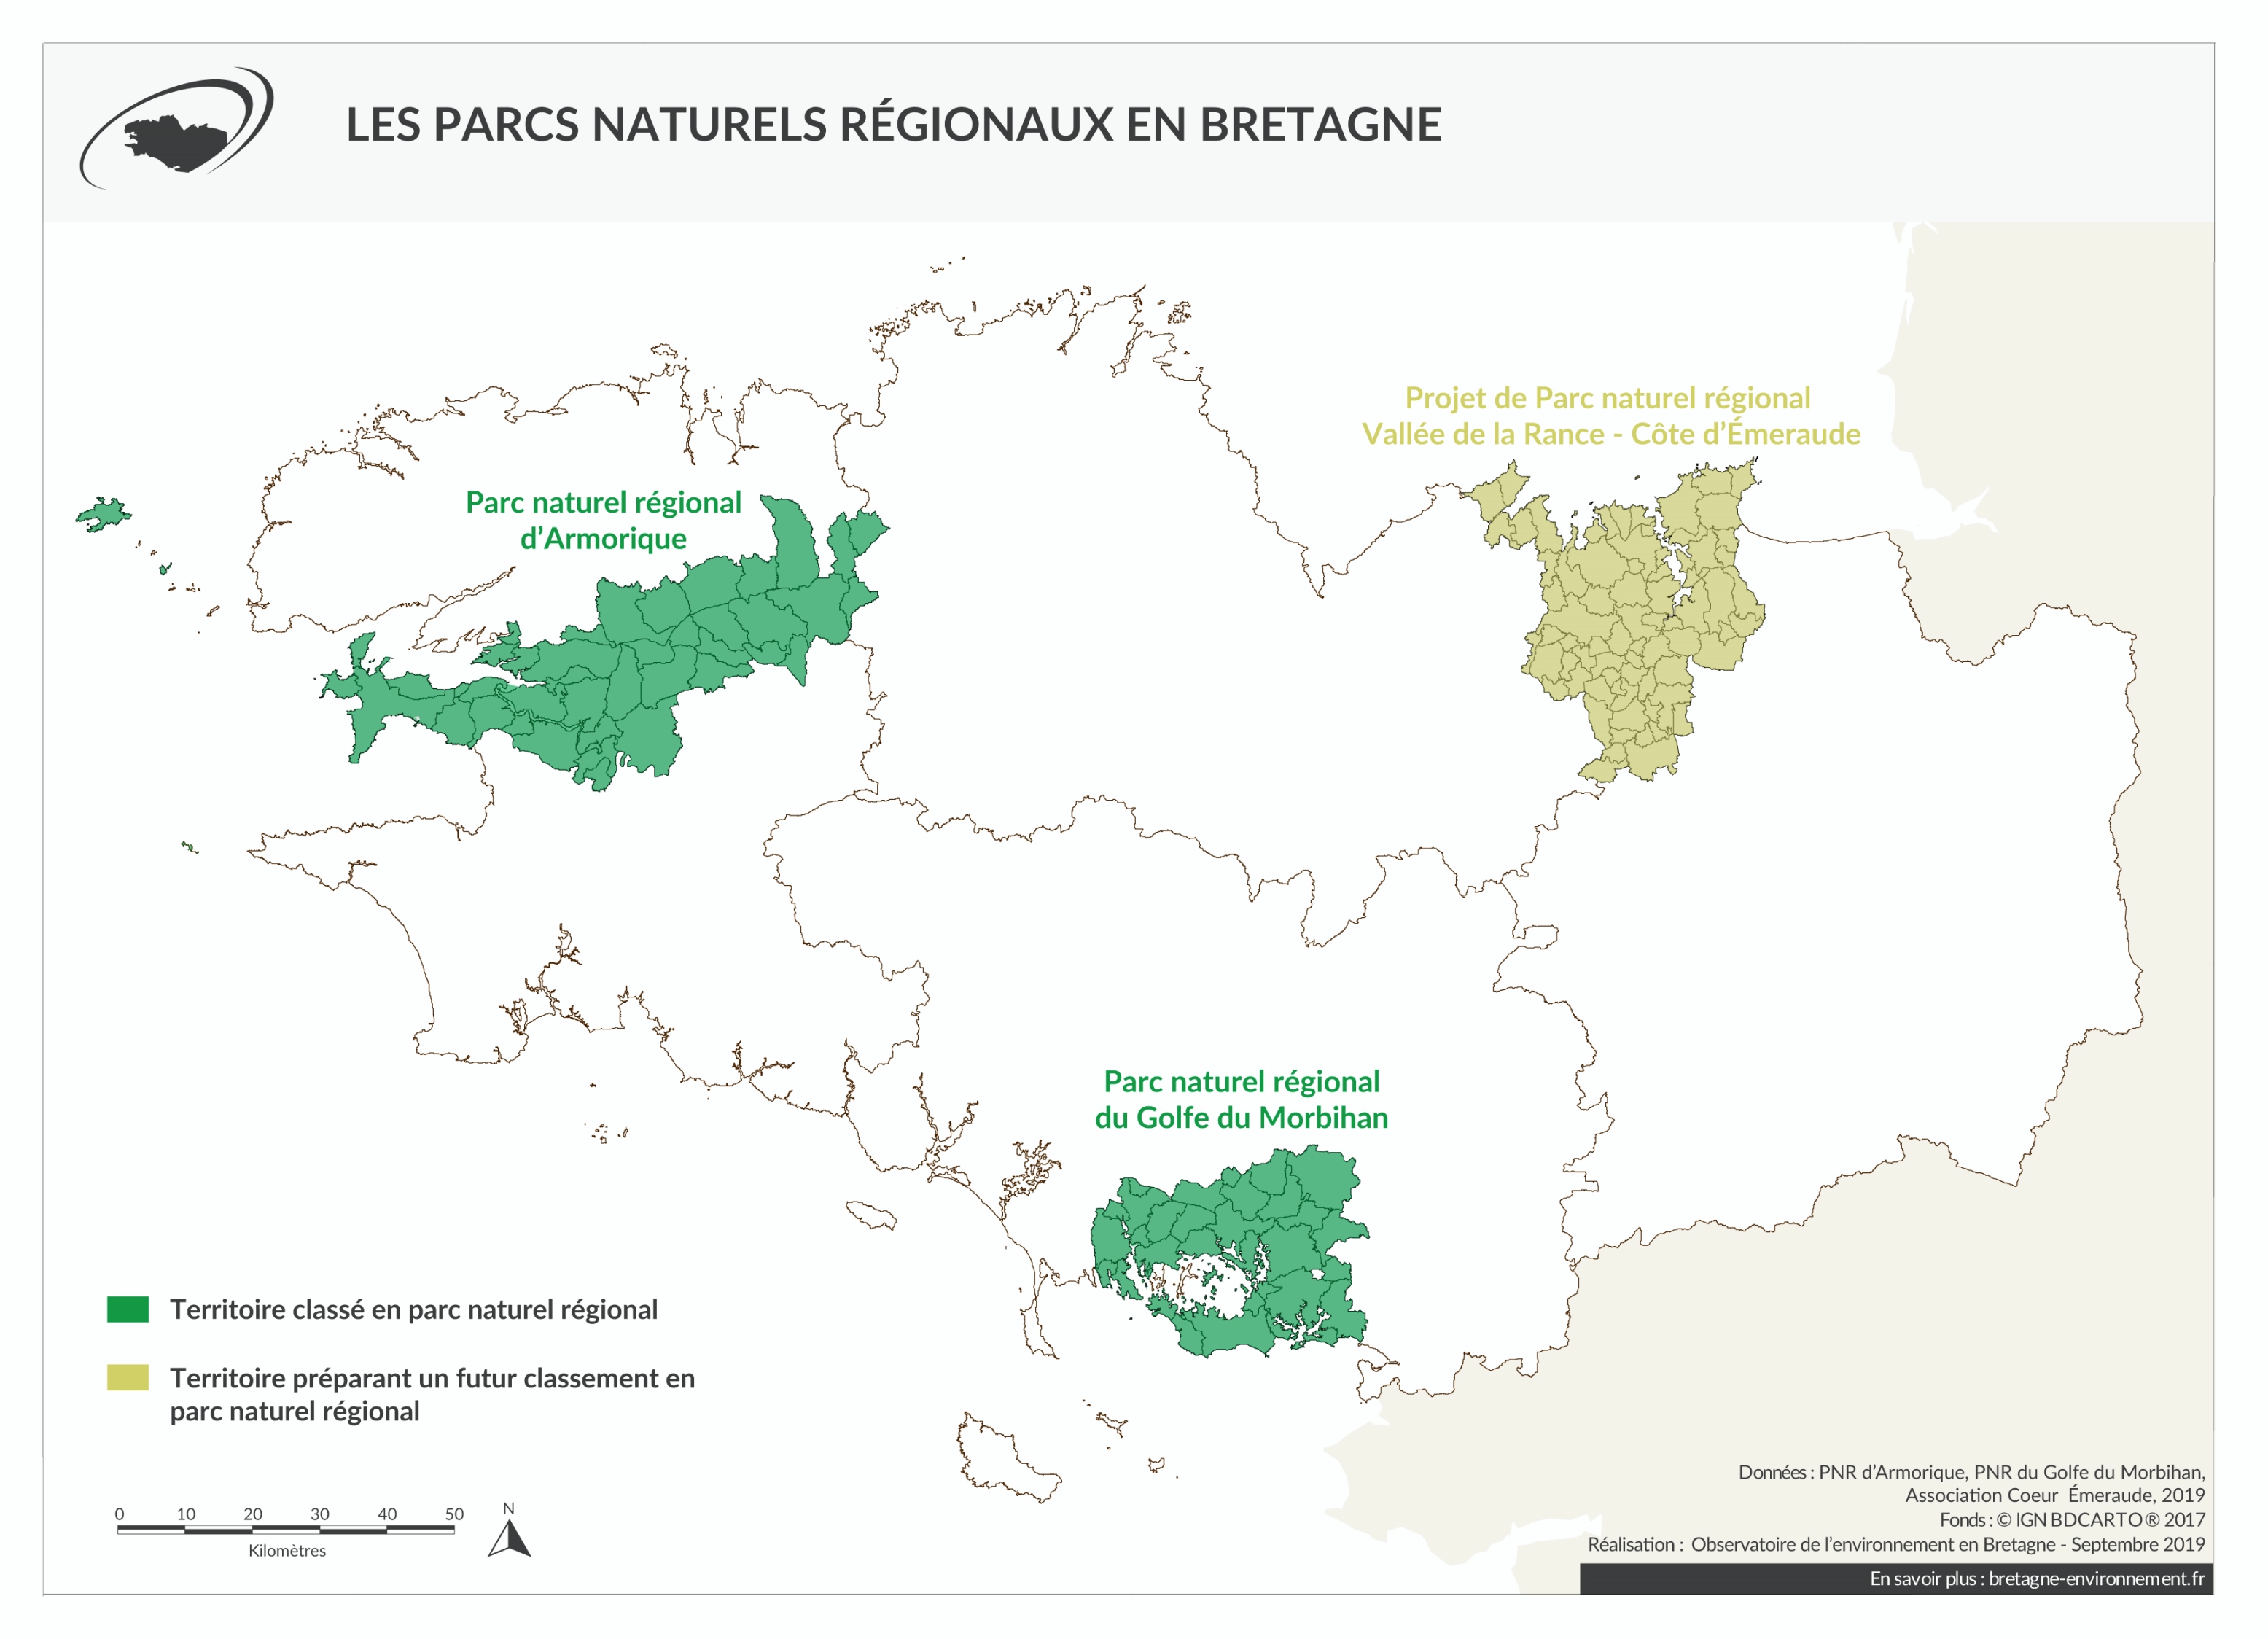 Projet de parc naturel régional Vallée de la Rance - Côte d'Emeraude